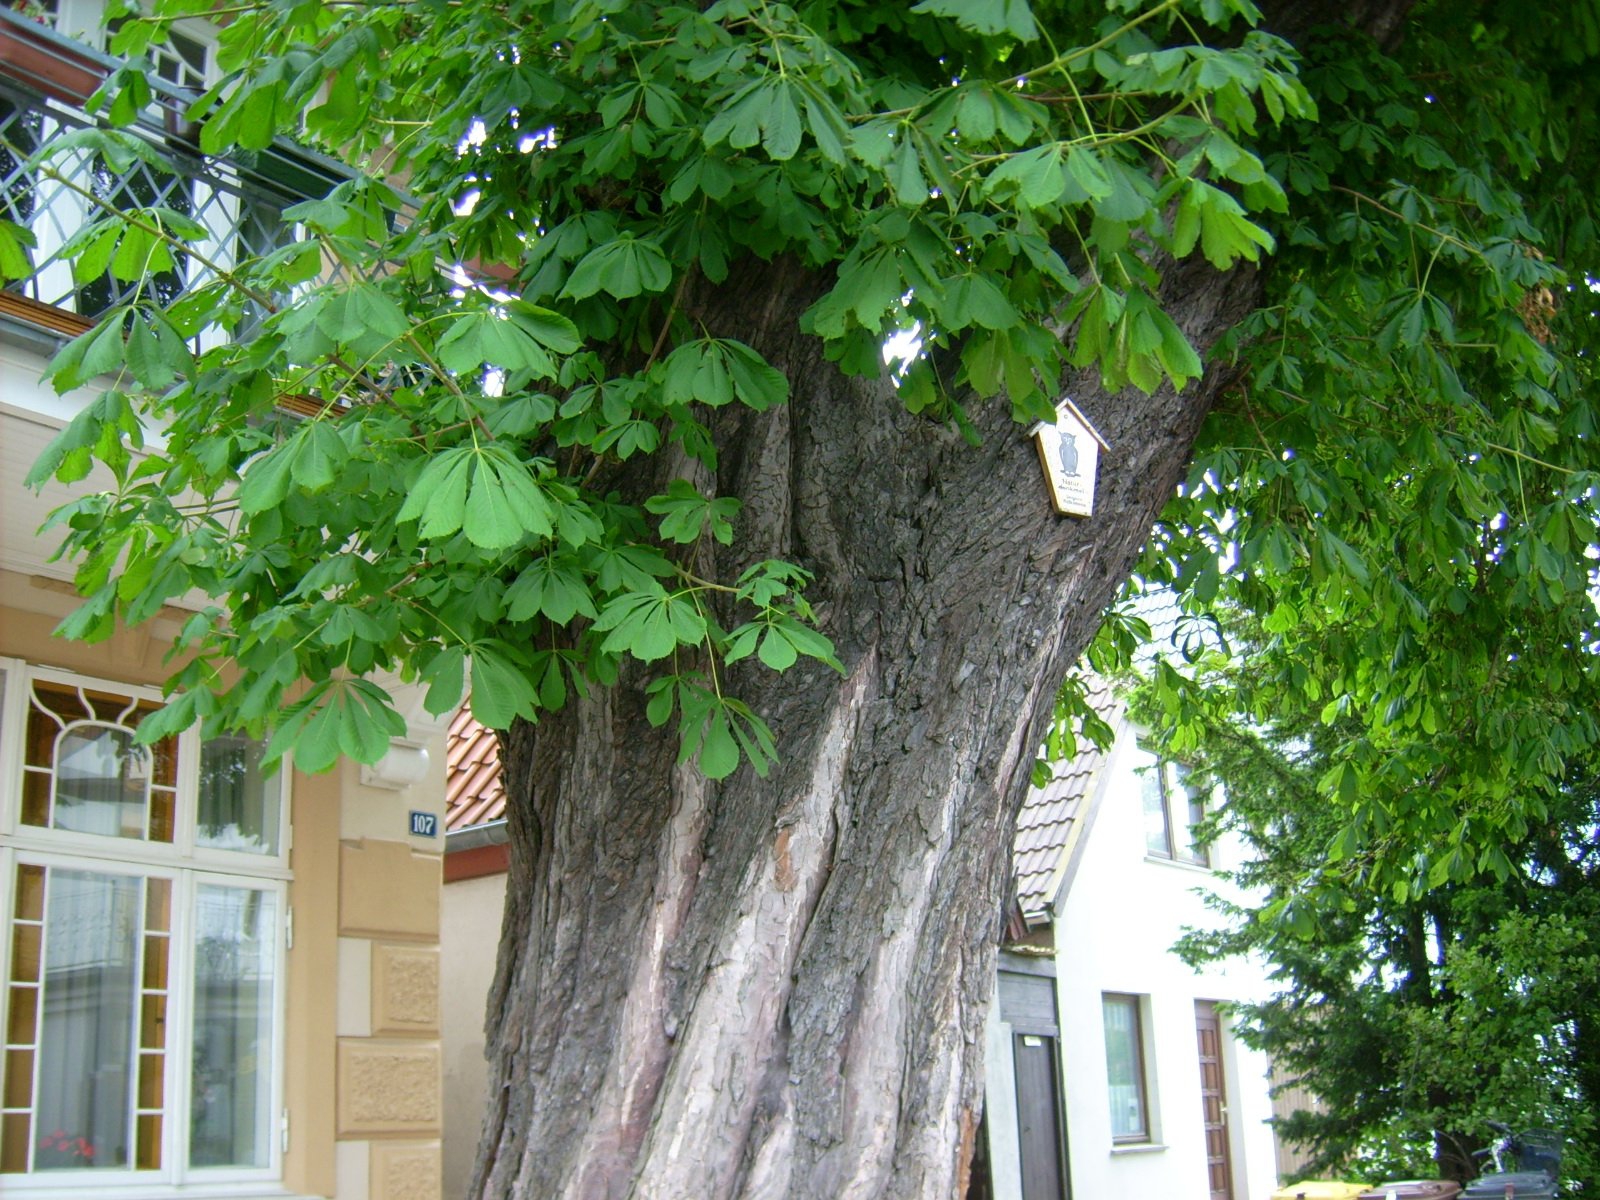 Farbfoto: Ein Kastanienbaum in Warnemünde im Juni des Jahres 2009. Fotograf: Bernd Paepcke.